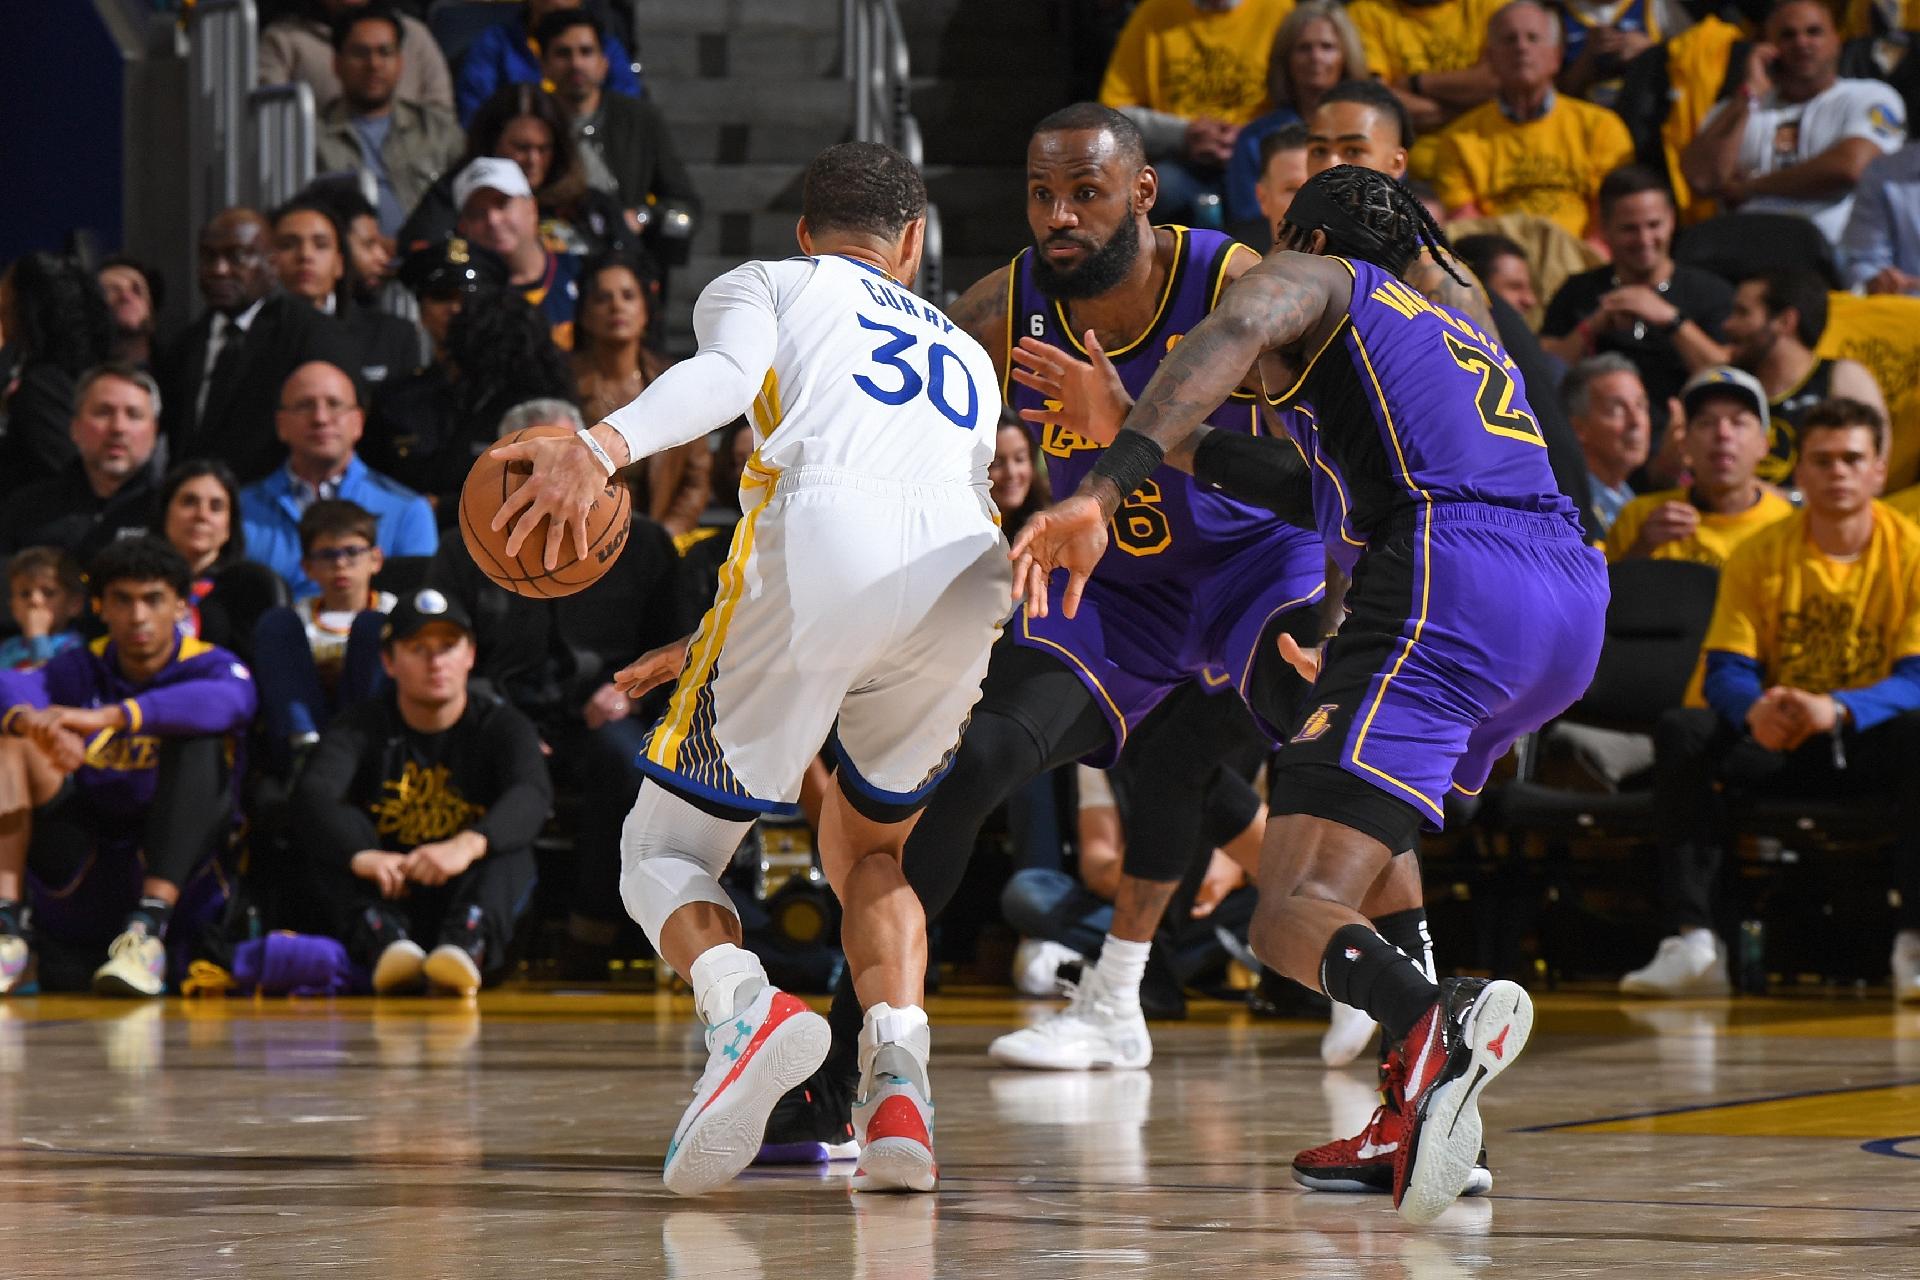 Lakers vão de mal a pior na NBA: quarta derrota em quatro jogos em 2022/23  - Basquetebol - SAPO Desporto